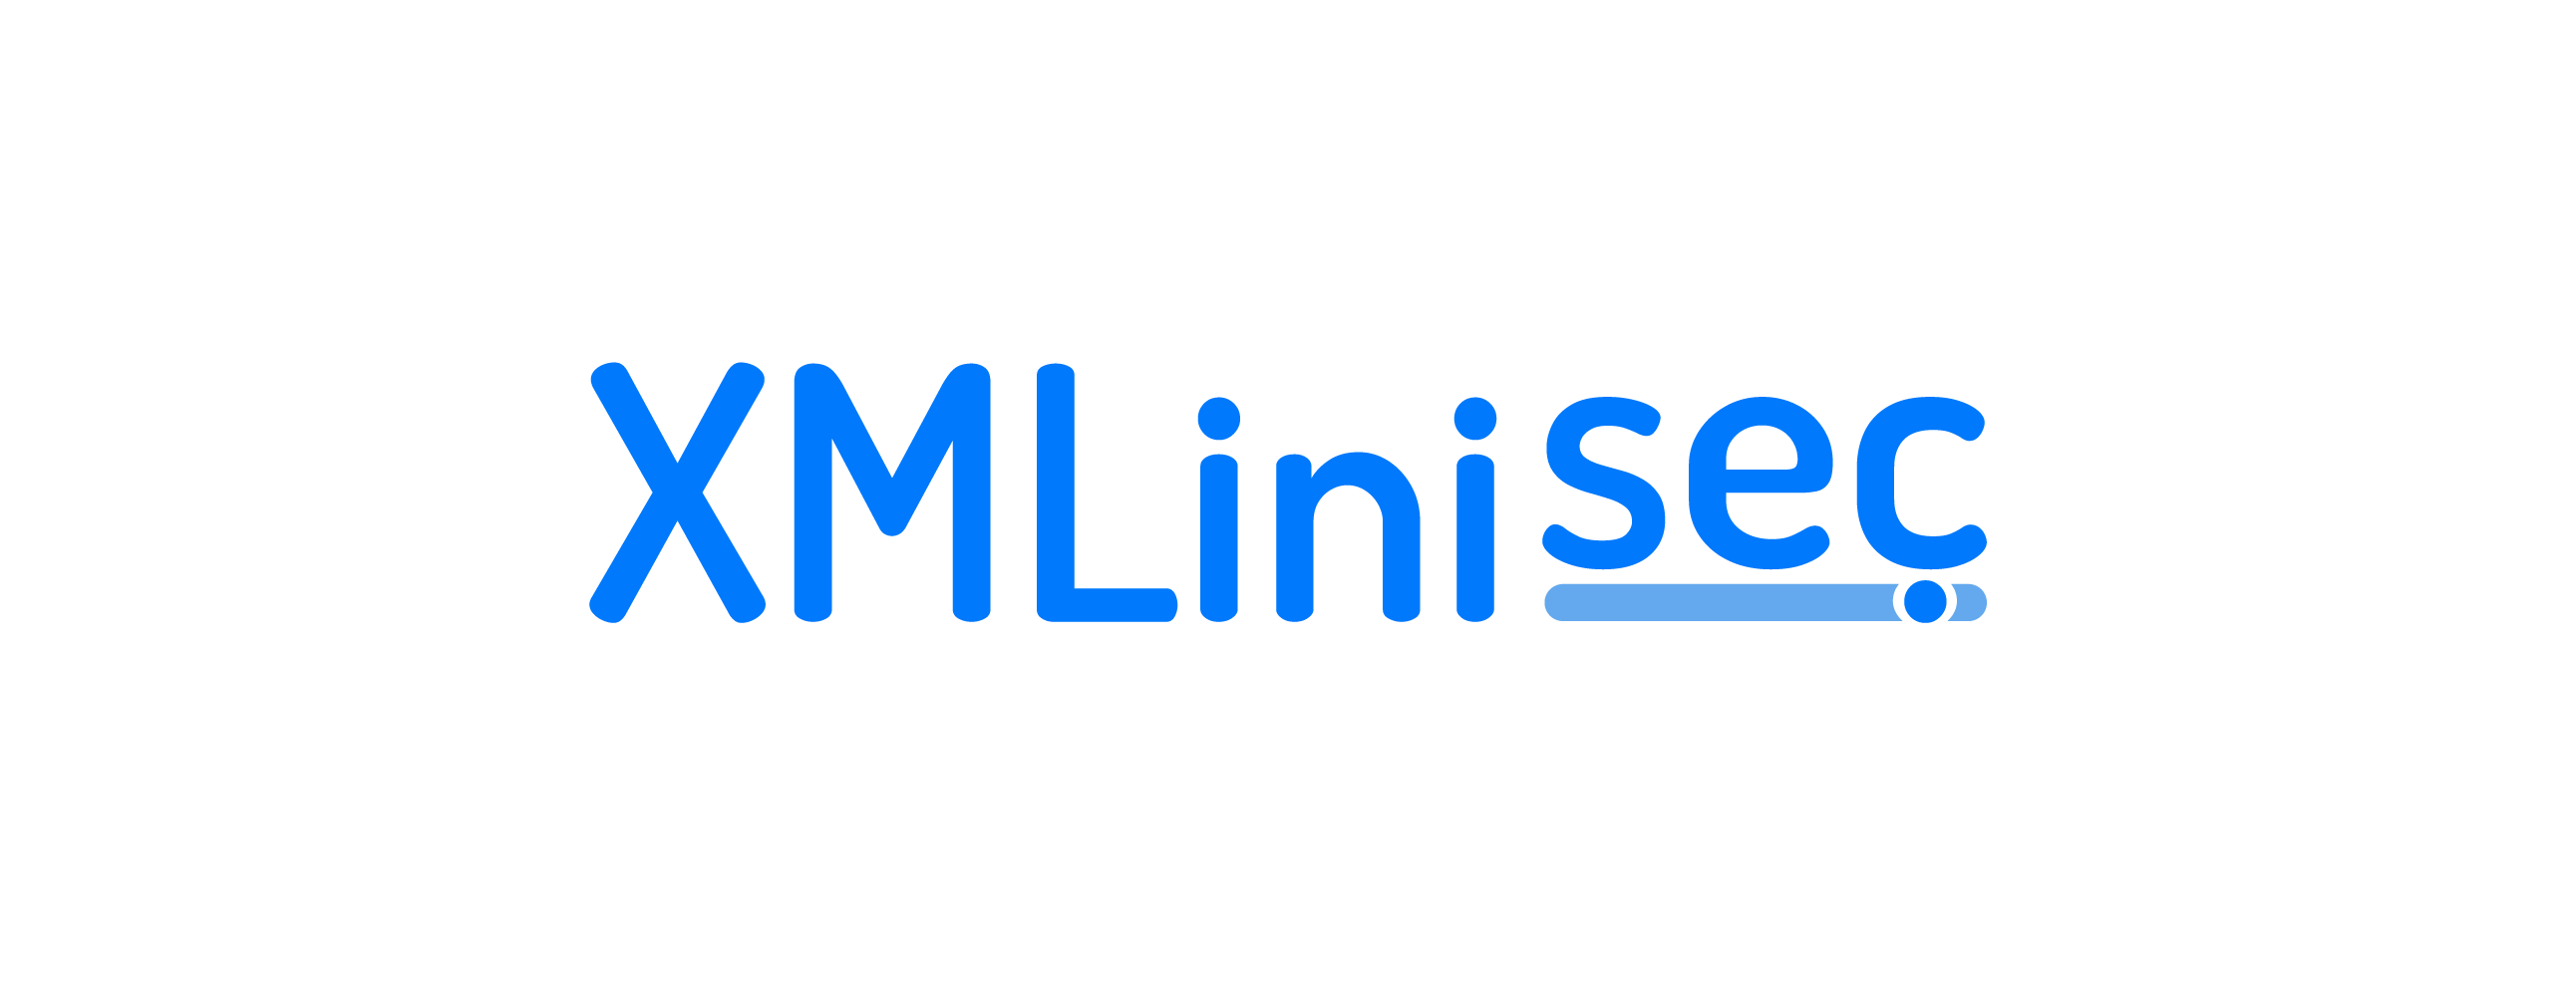 Xmlinisec.com